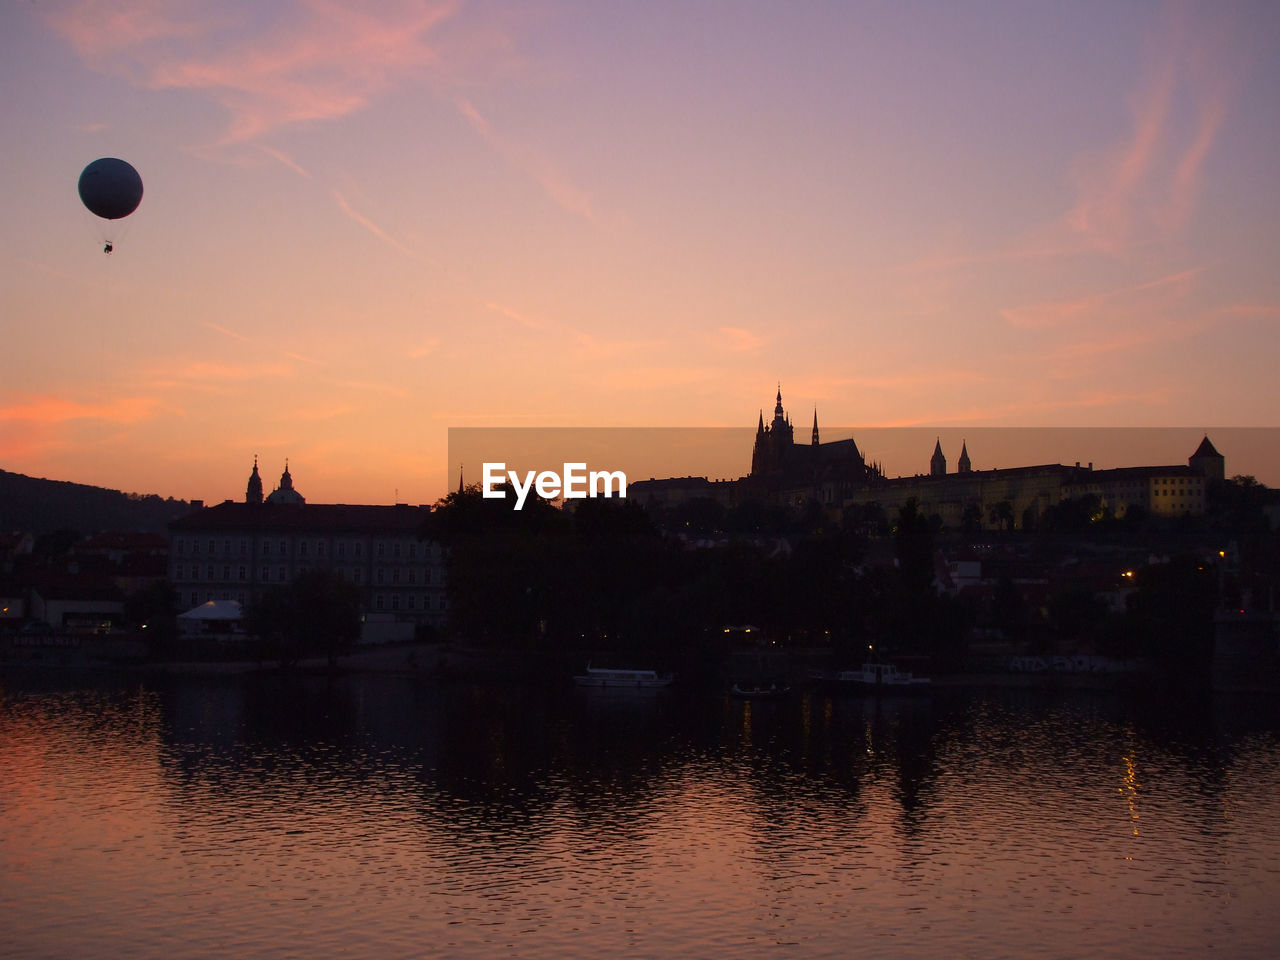 Prague castle at dusk